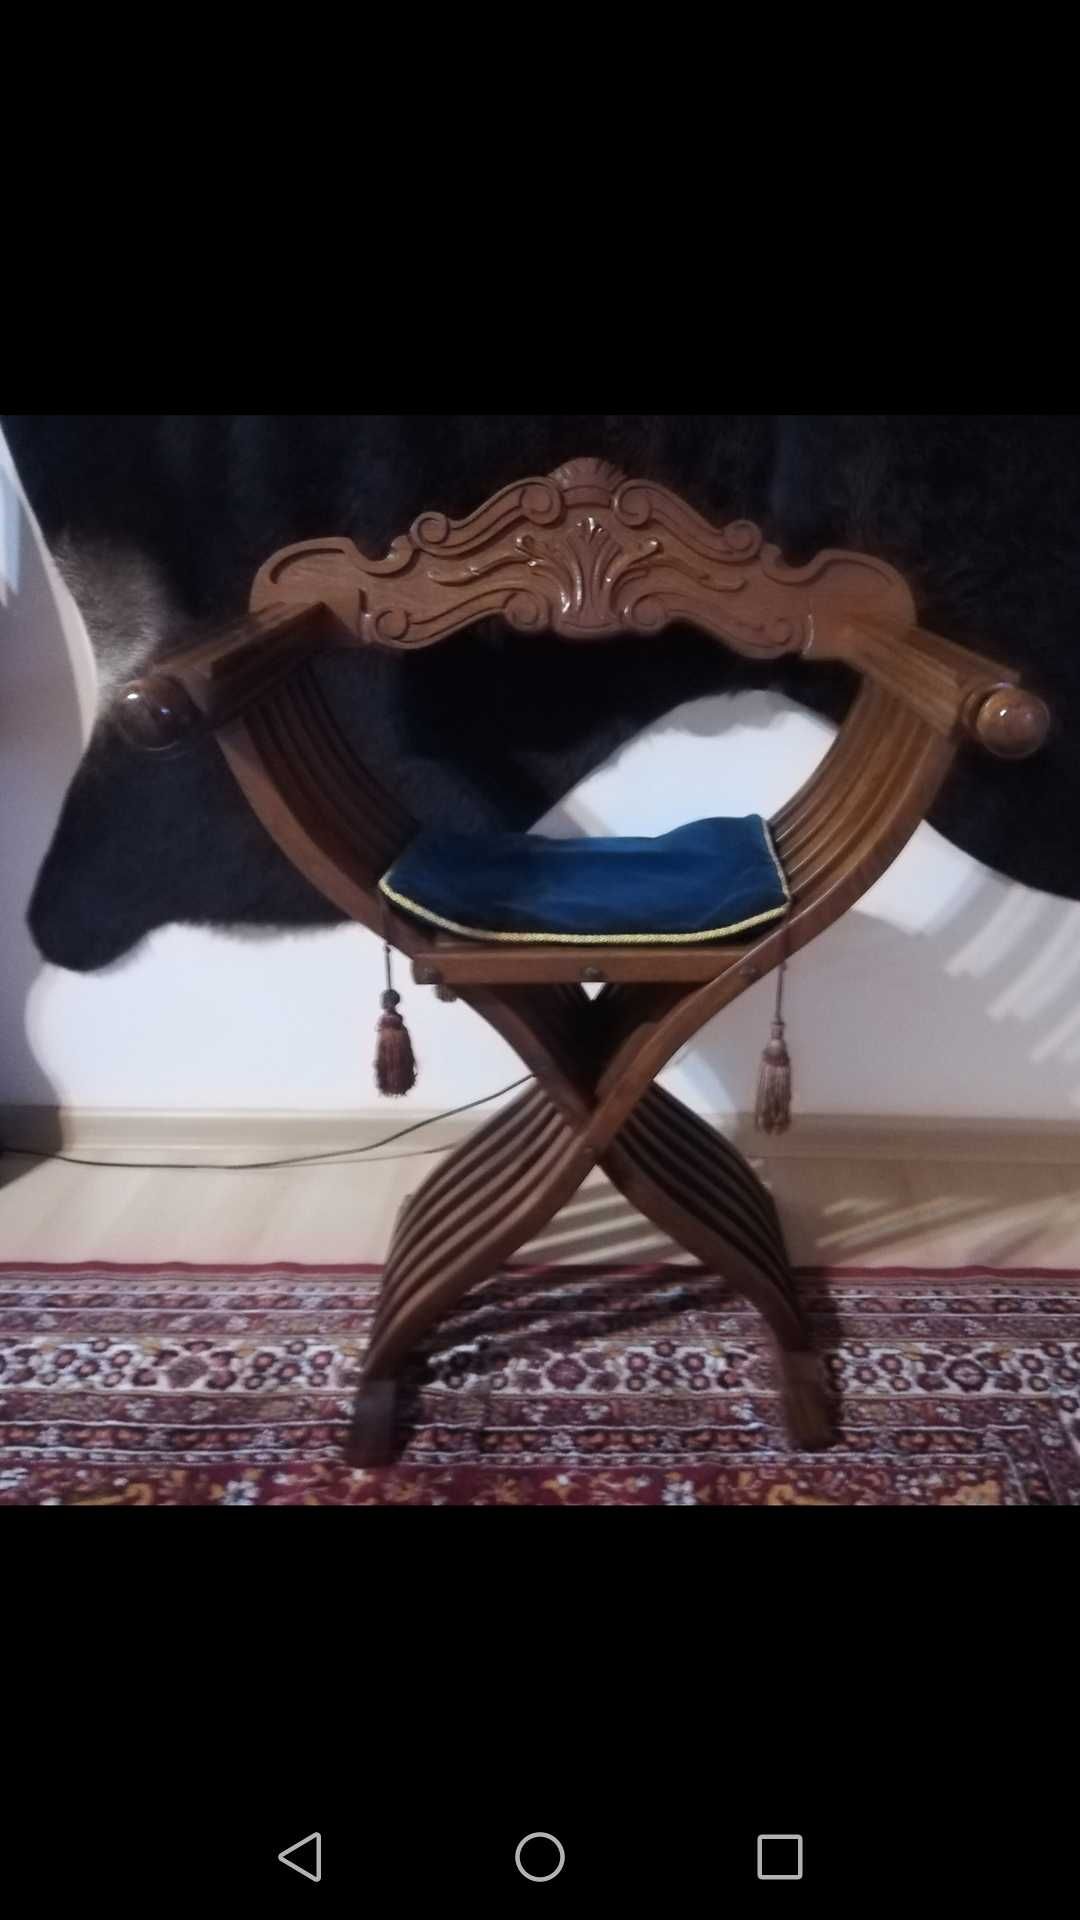 Krzesło składane w typie "rzymskim"